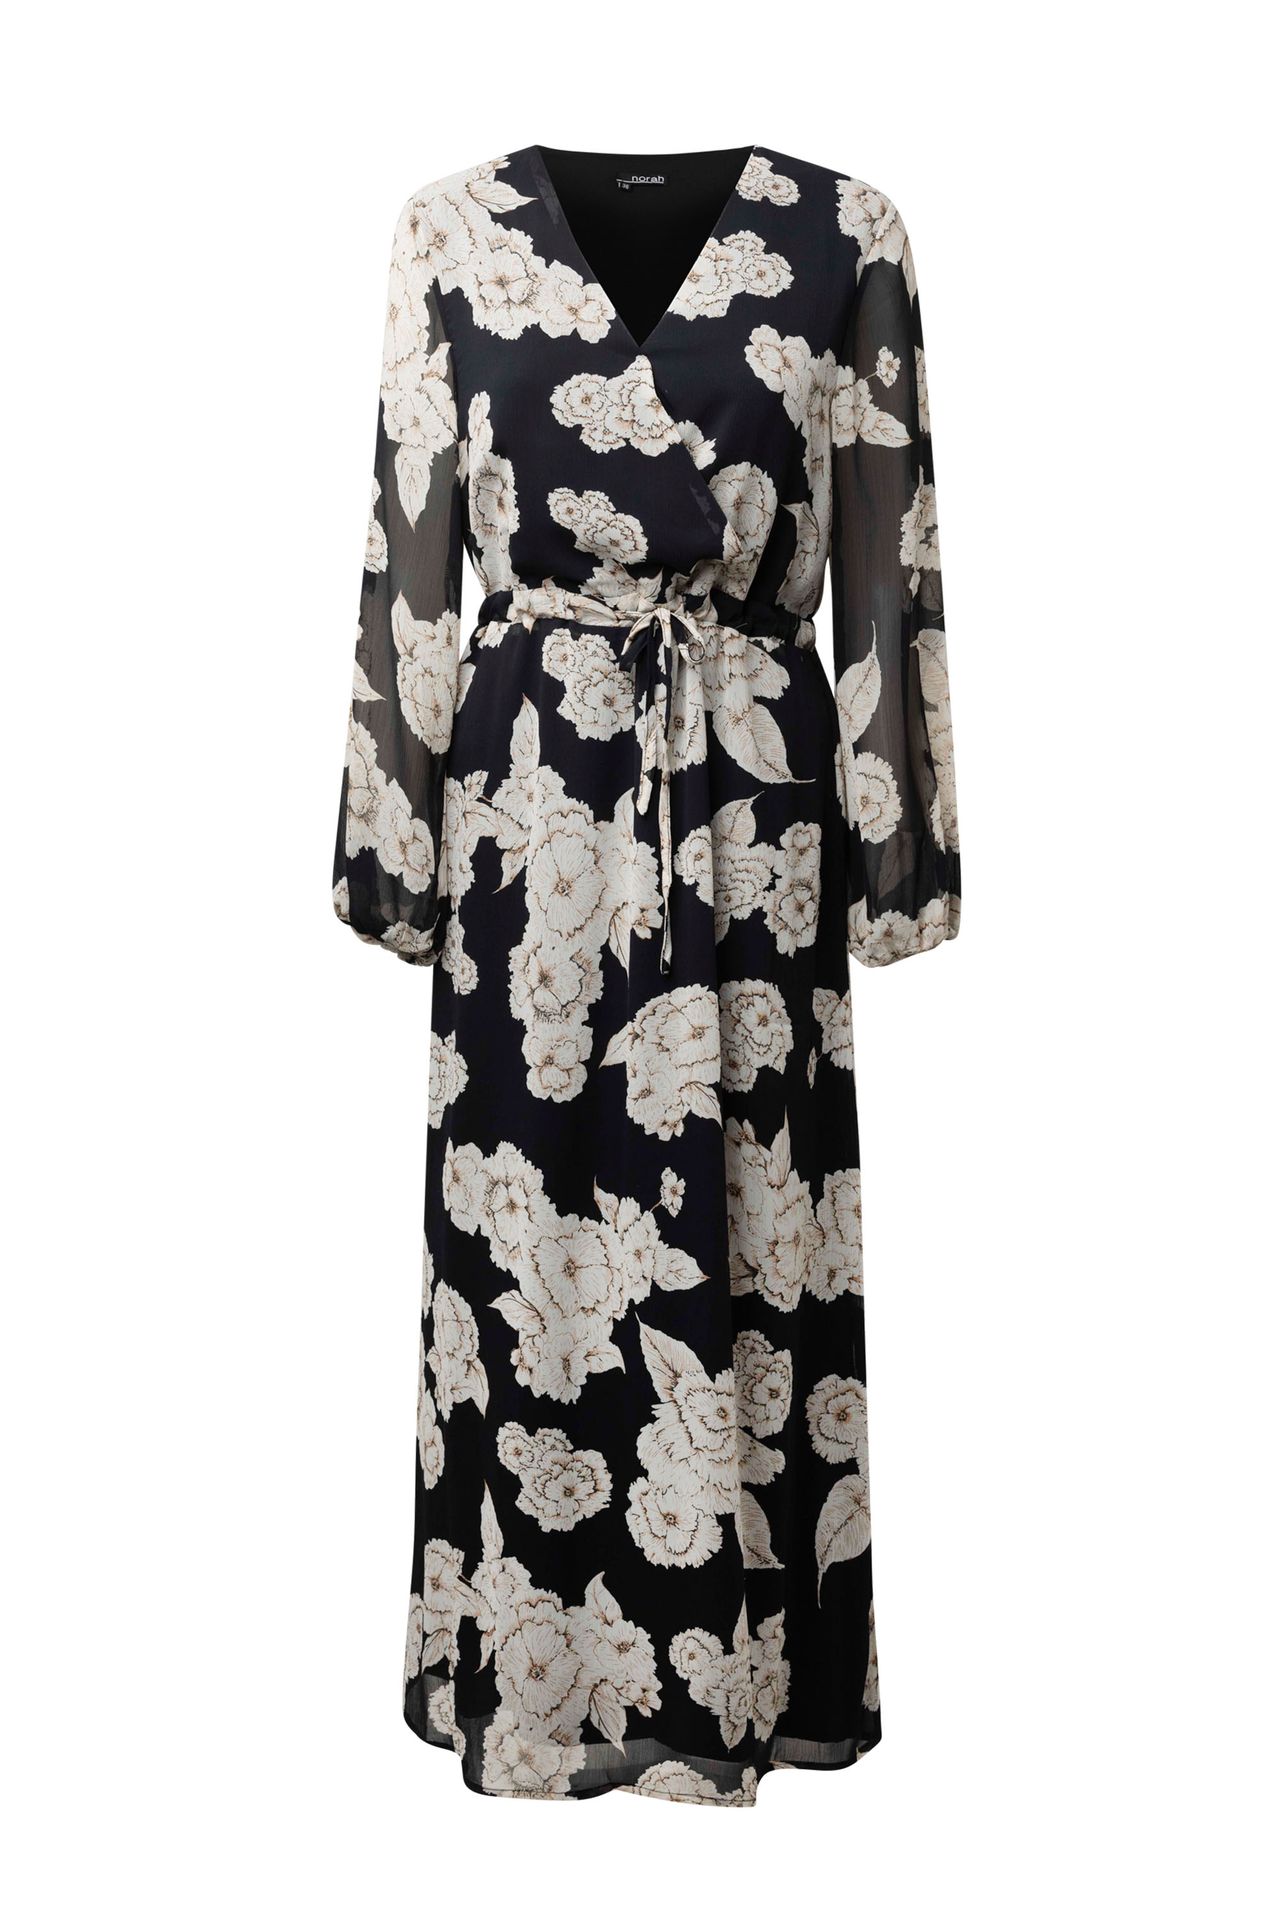 Norah Maxi jurk met bloemenprint black multicolor 214237-020